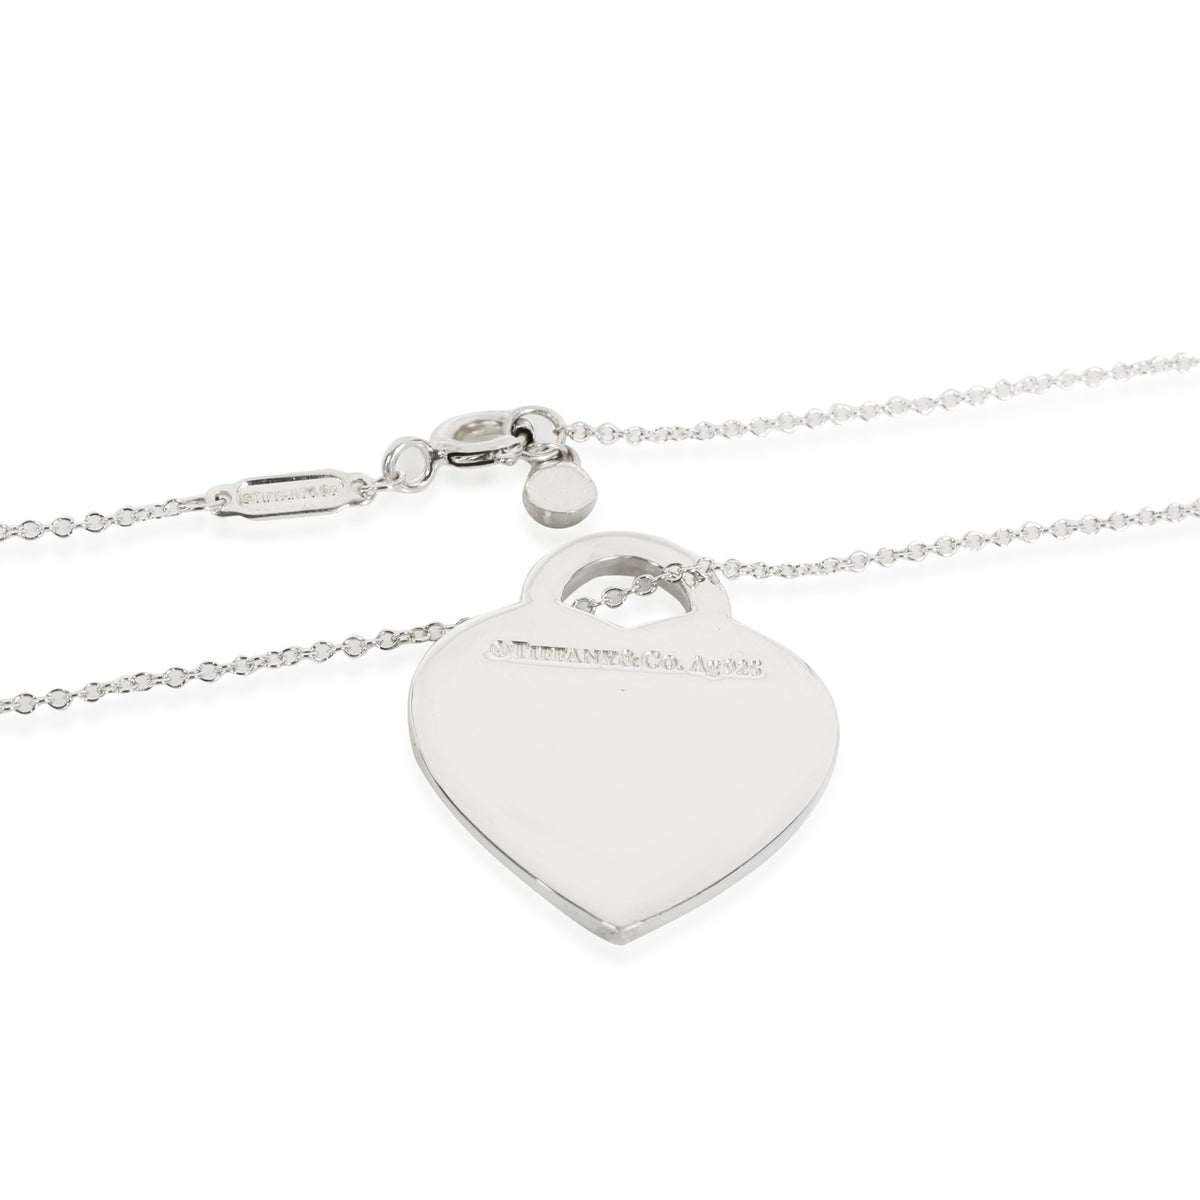 Tiffany & Co. Sentimental Double Heart Necklace 18K Pink Gold Women's | eBay